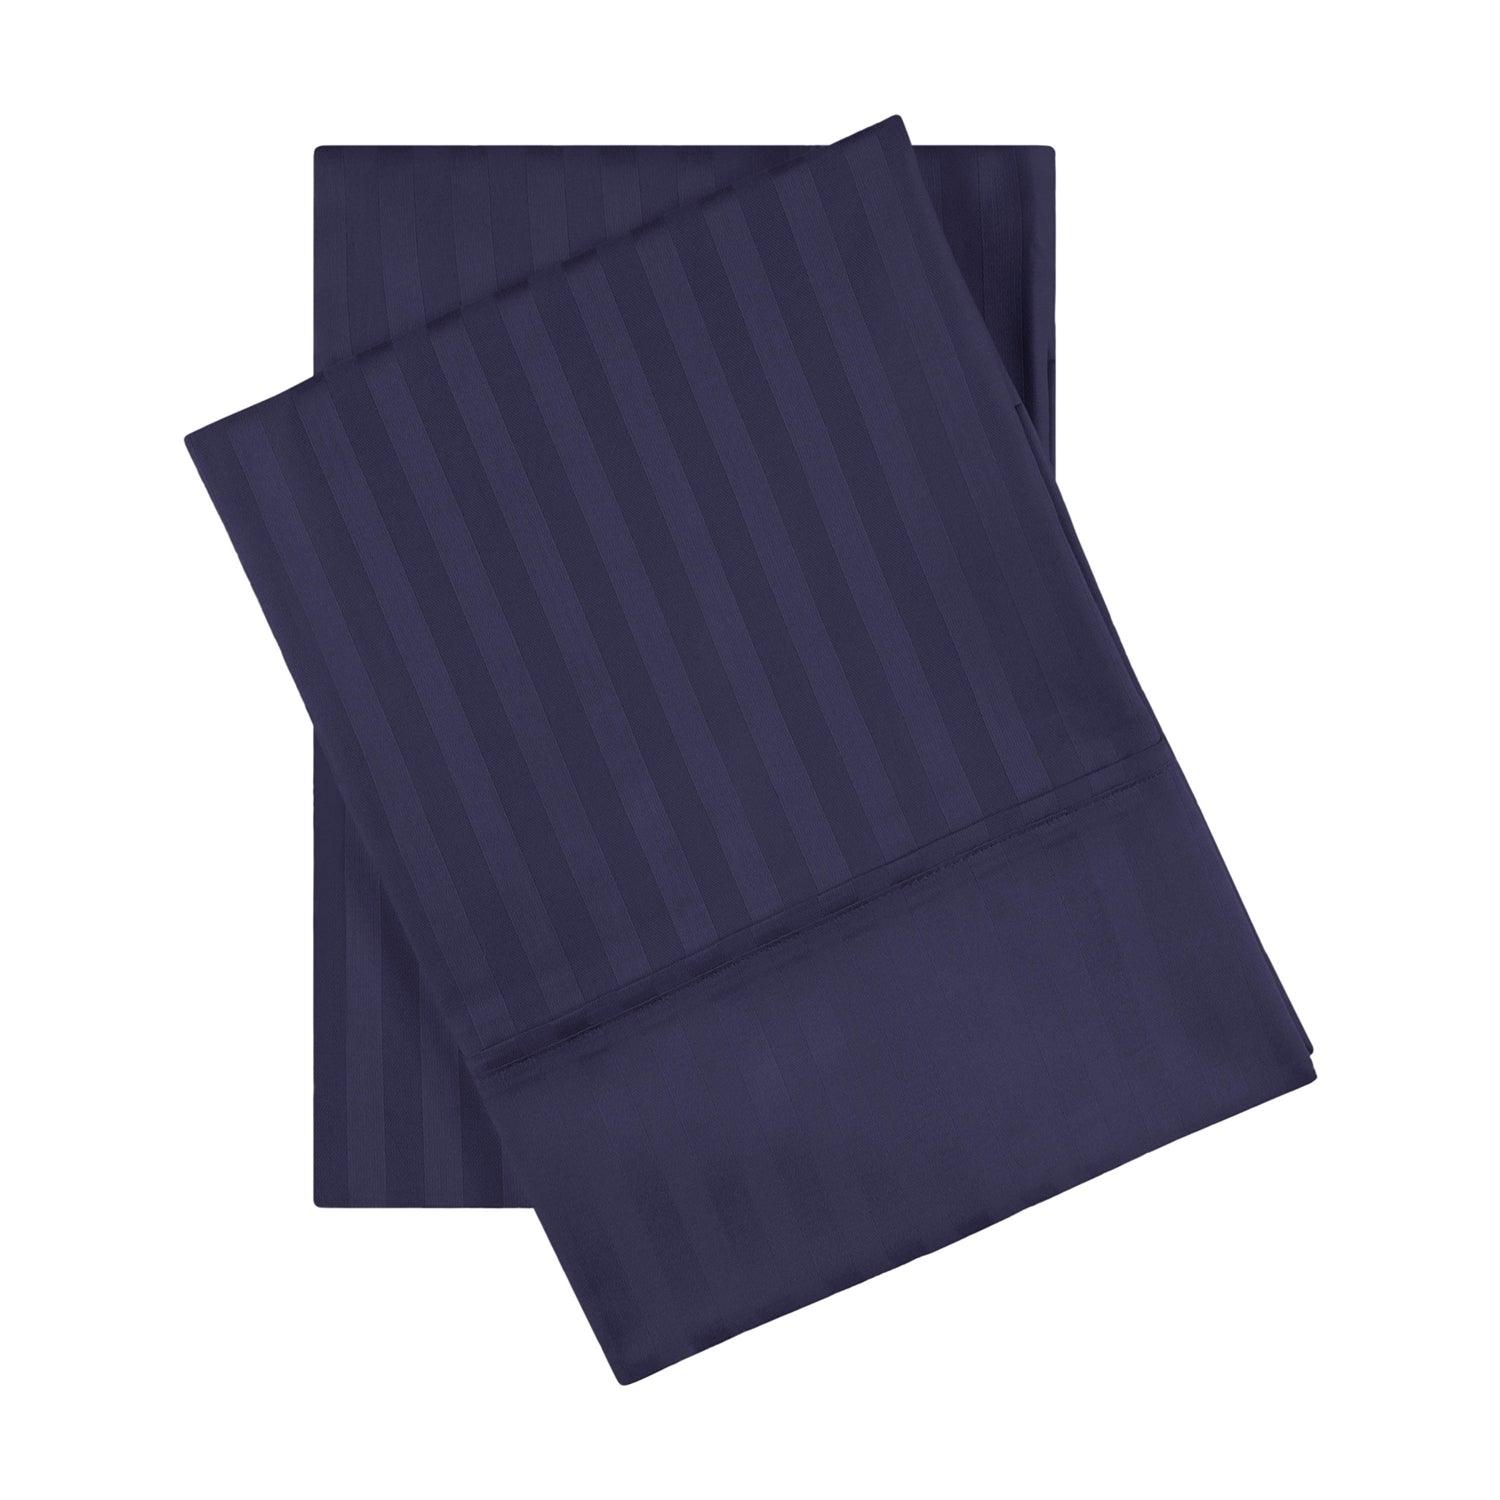 Premium 600 Thread Count Egyptian Cotton Striped Pillowcase Set - Navy Blue